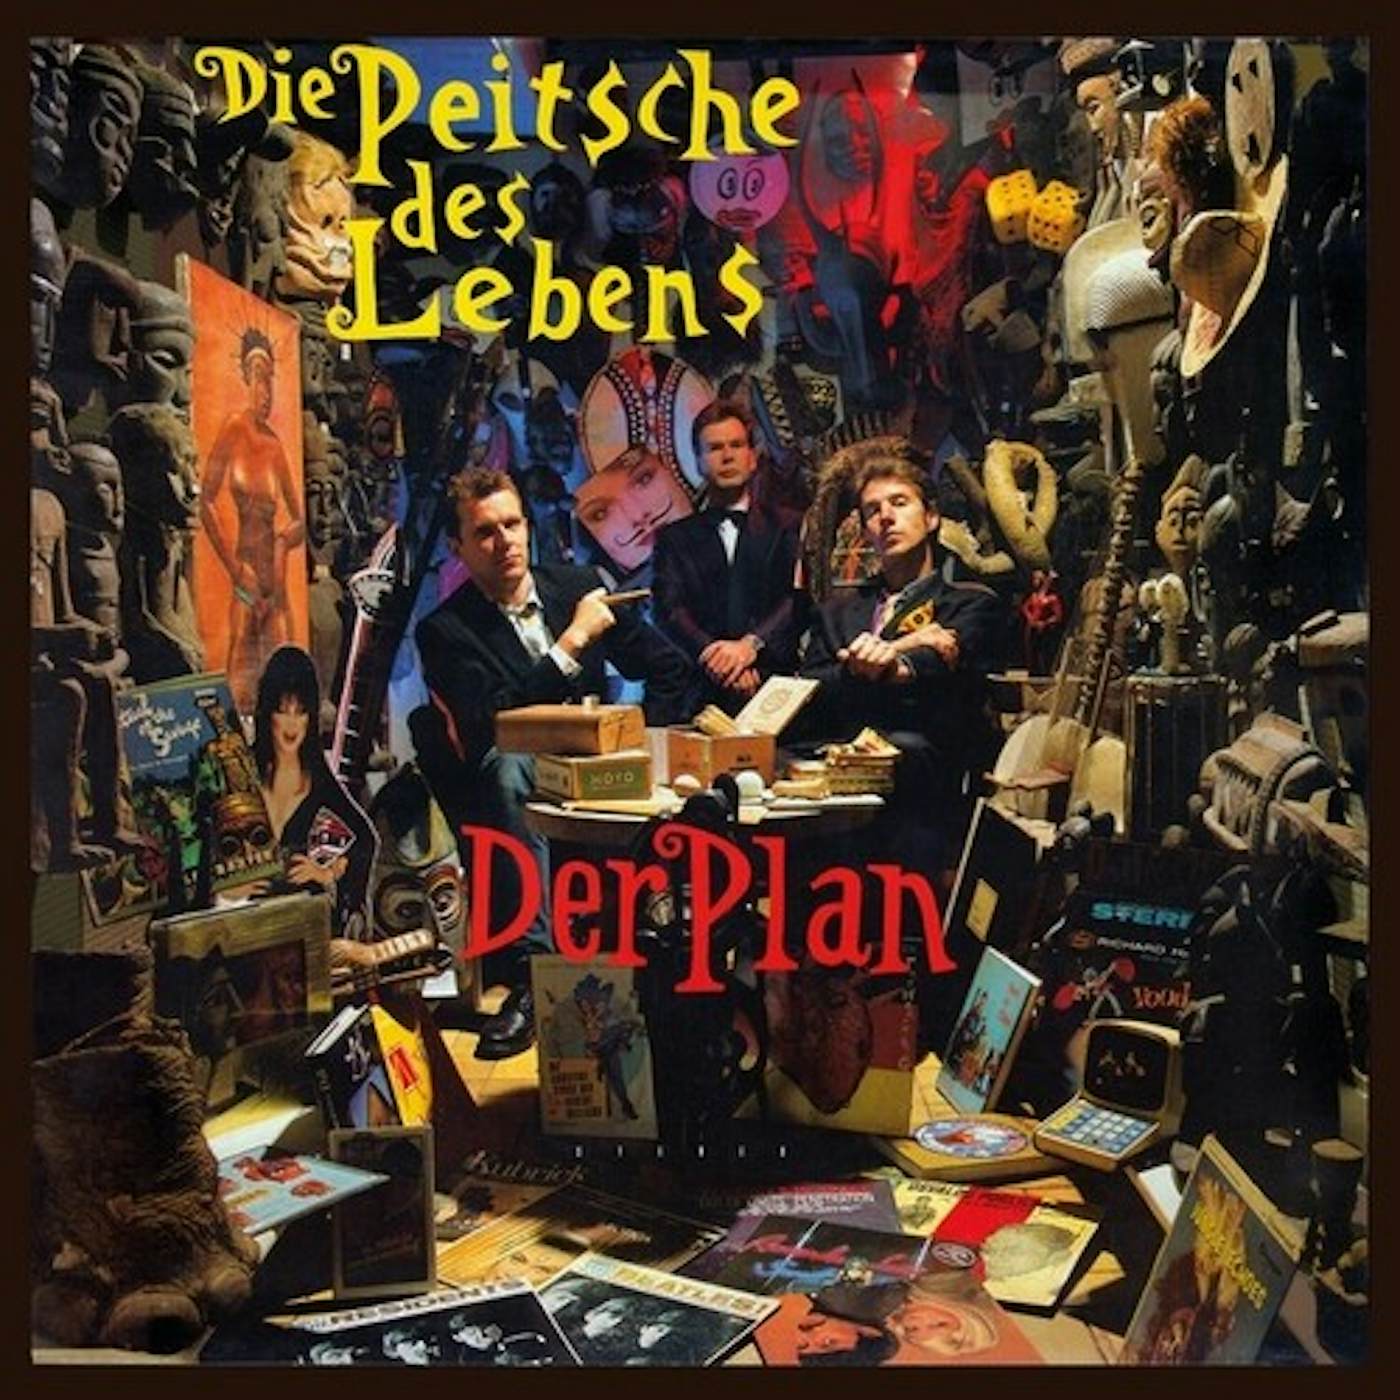 Der Plan DIE PEITSCHE DES LEBENS CD